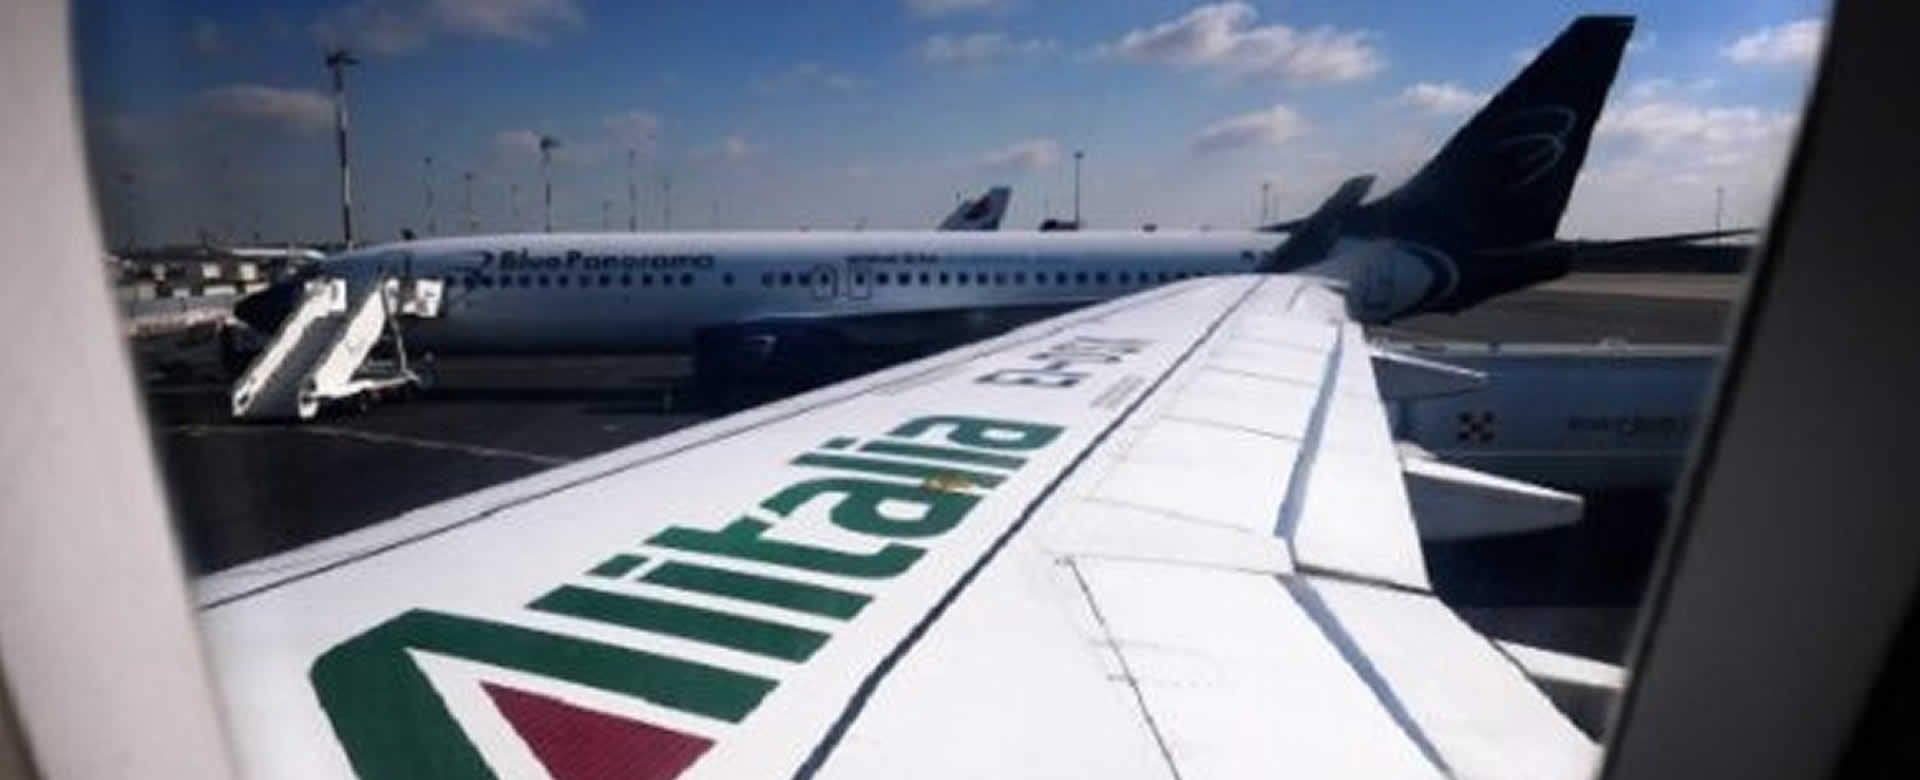 Aerolinea italiana es parte del plan gradual de salida del confinamiento.